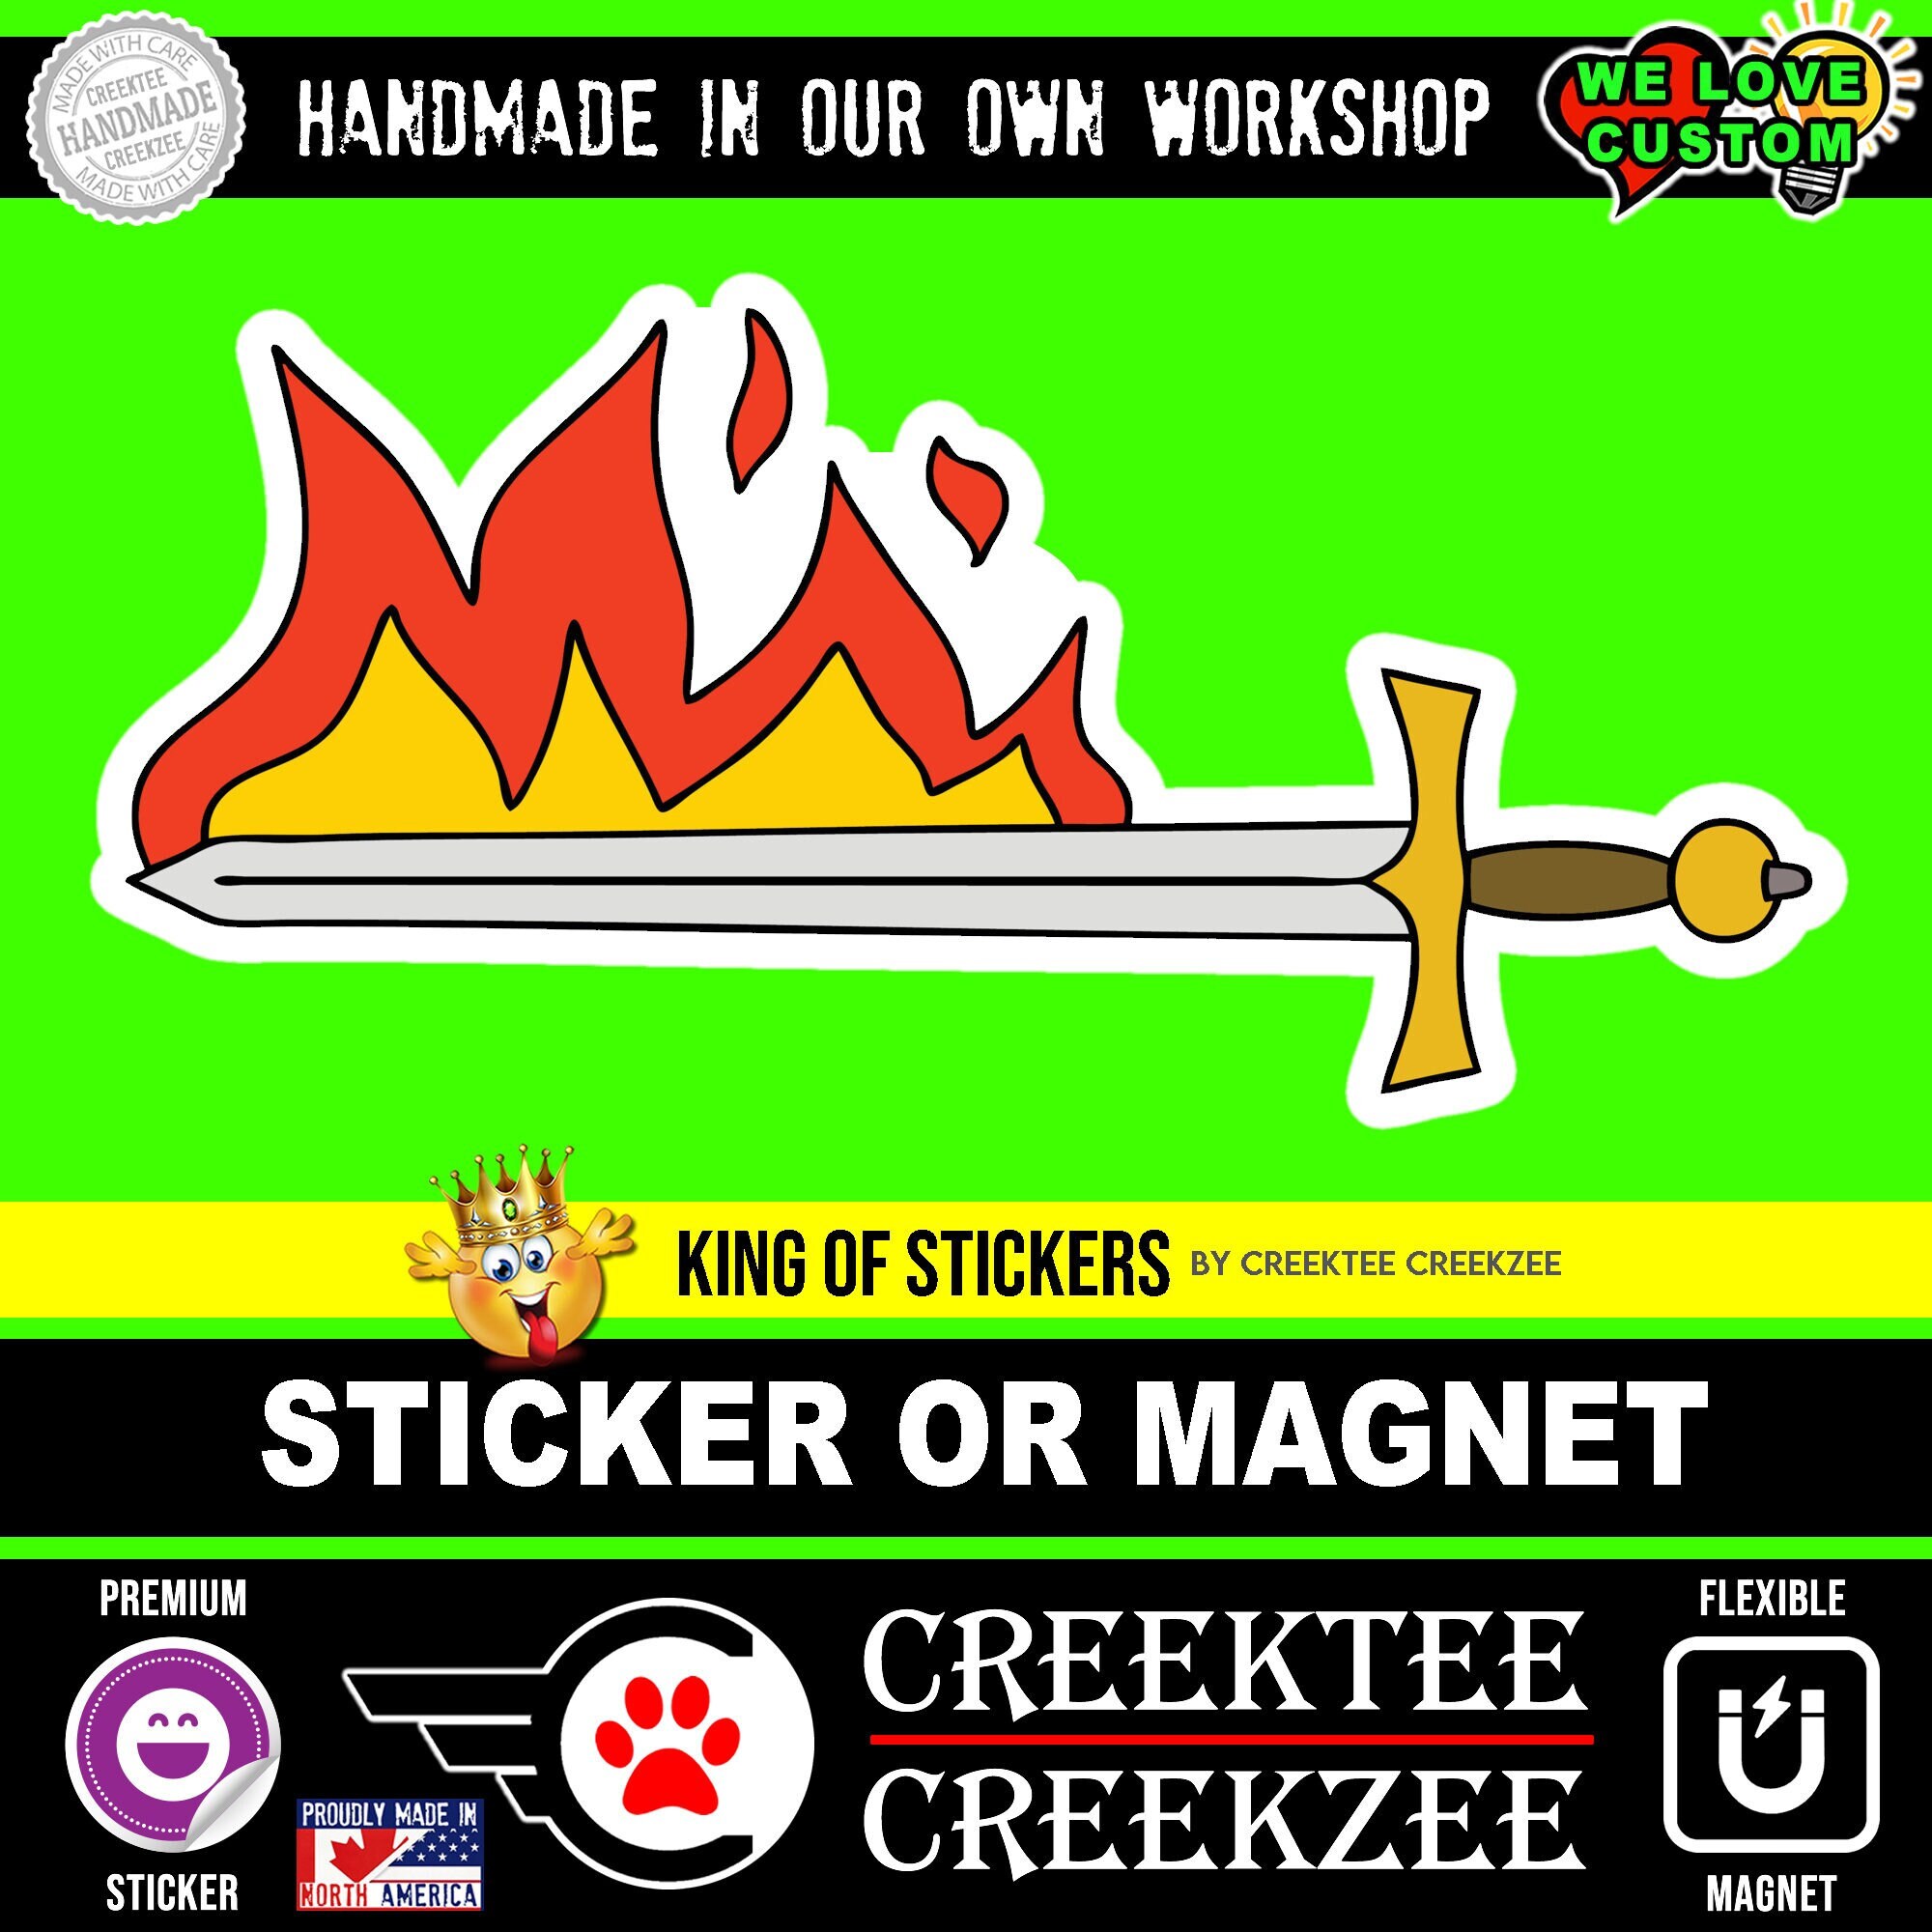 Medieval Die-Cut sticker or magnet in various widths, 3